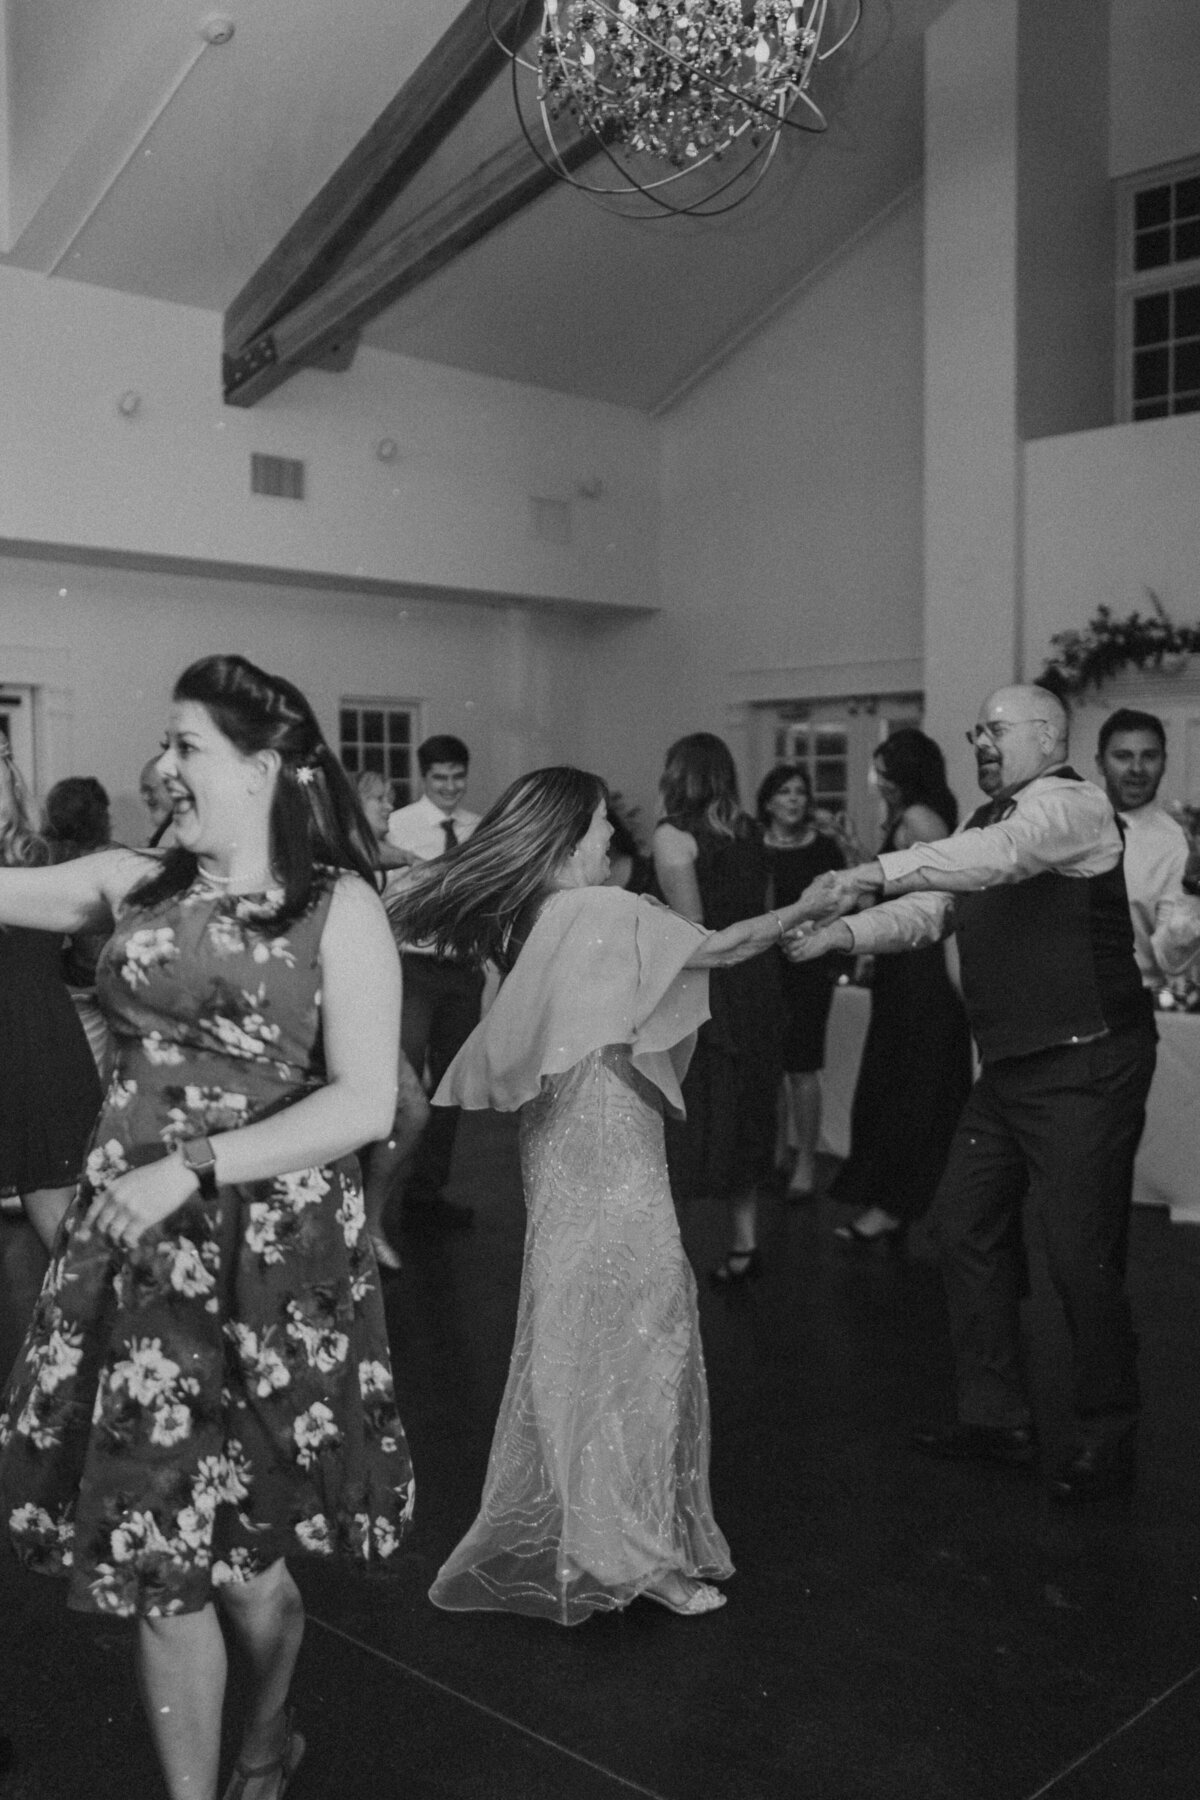 dancing at reception